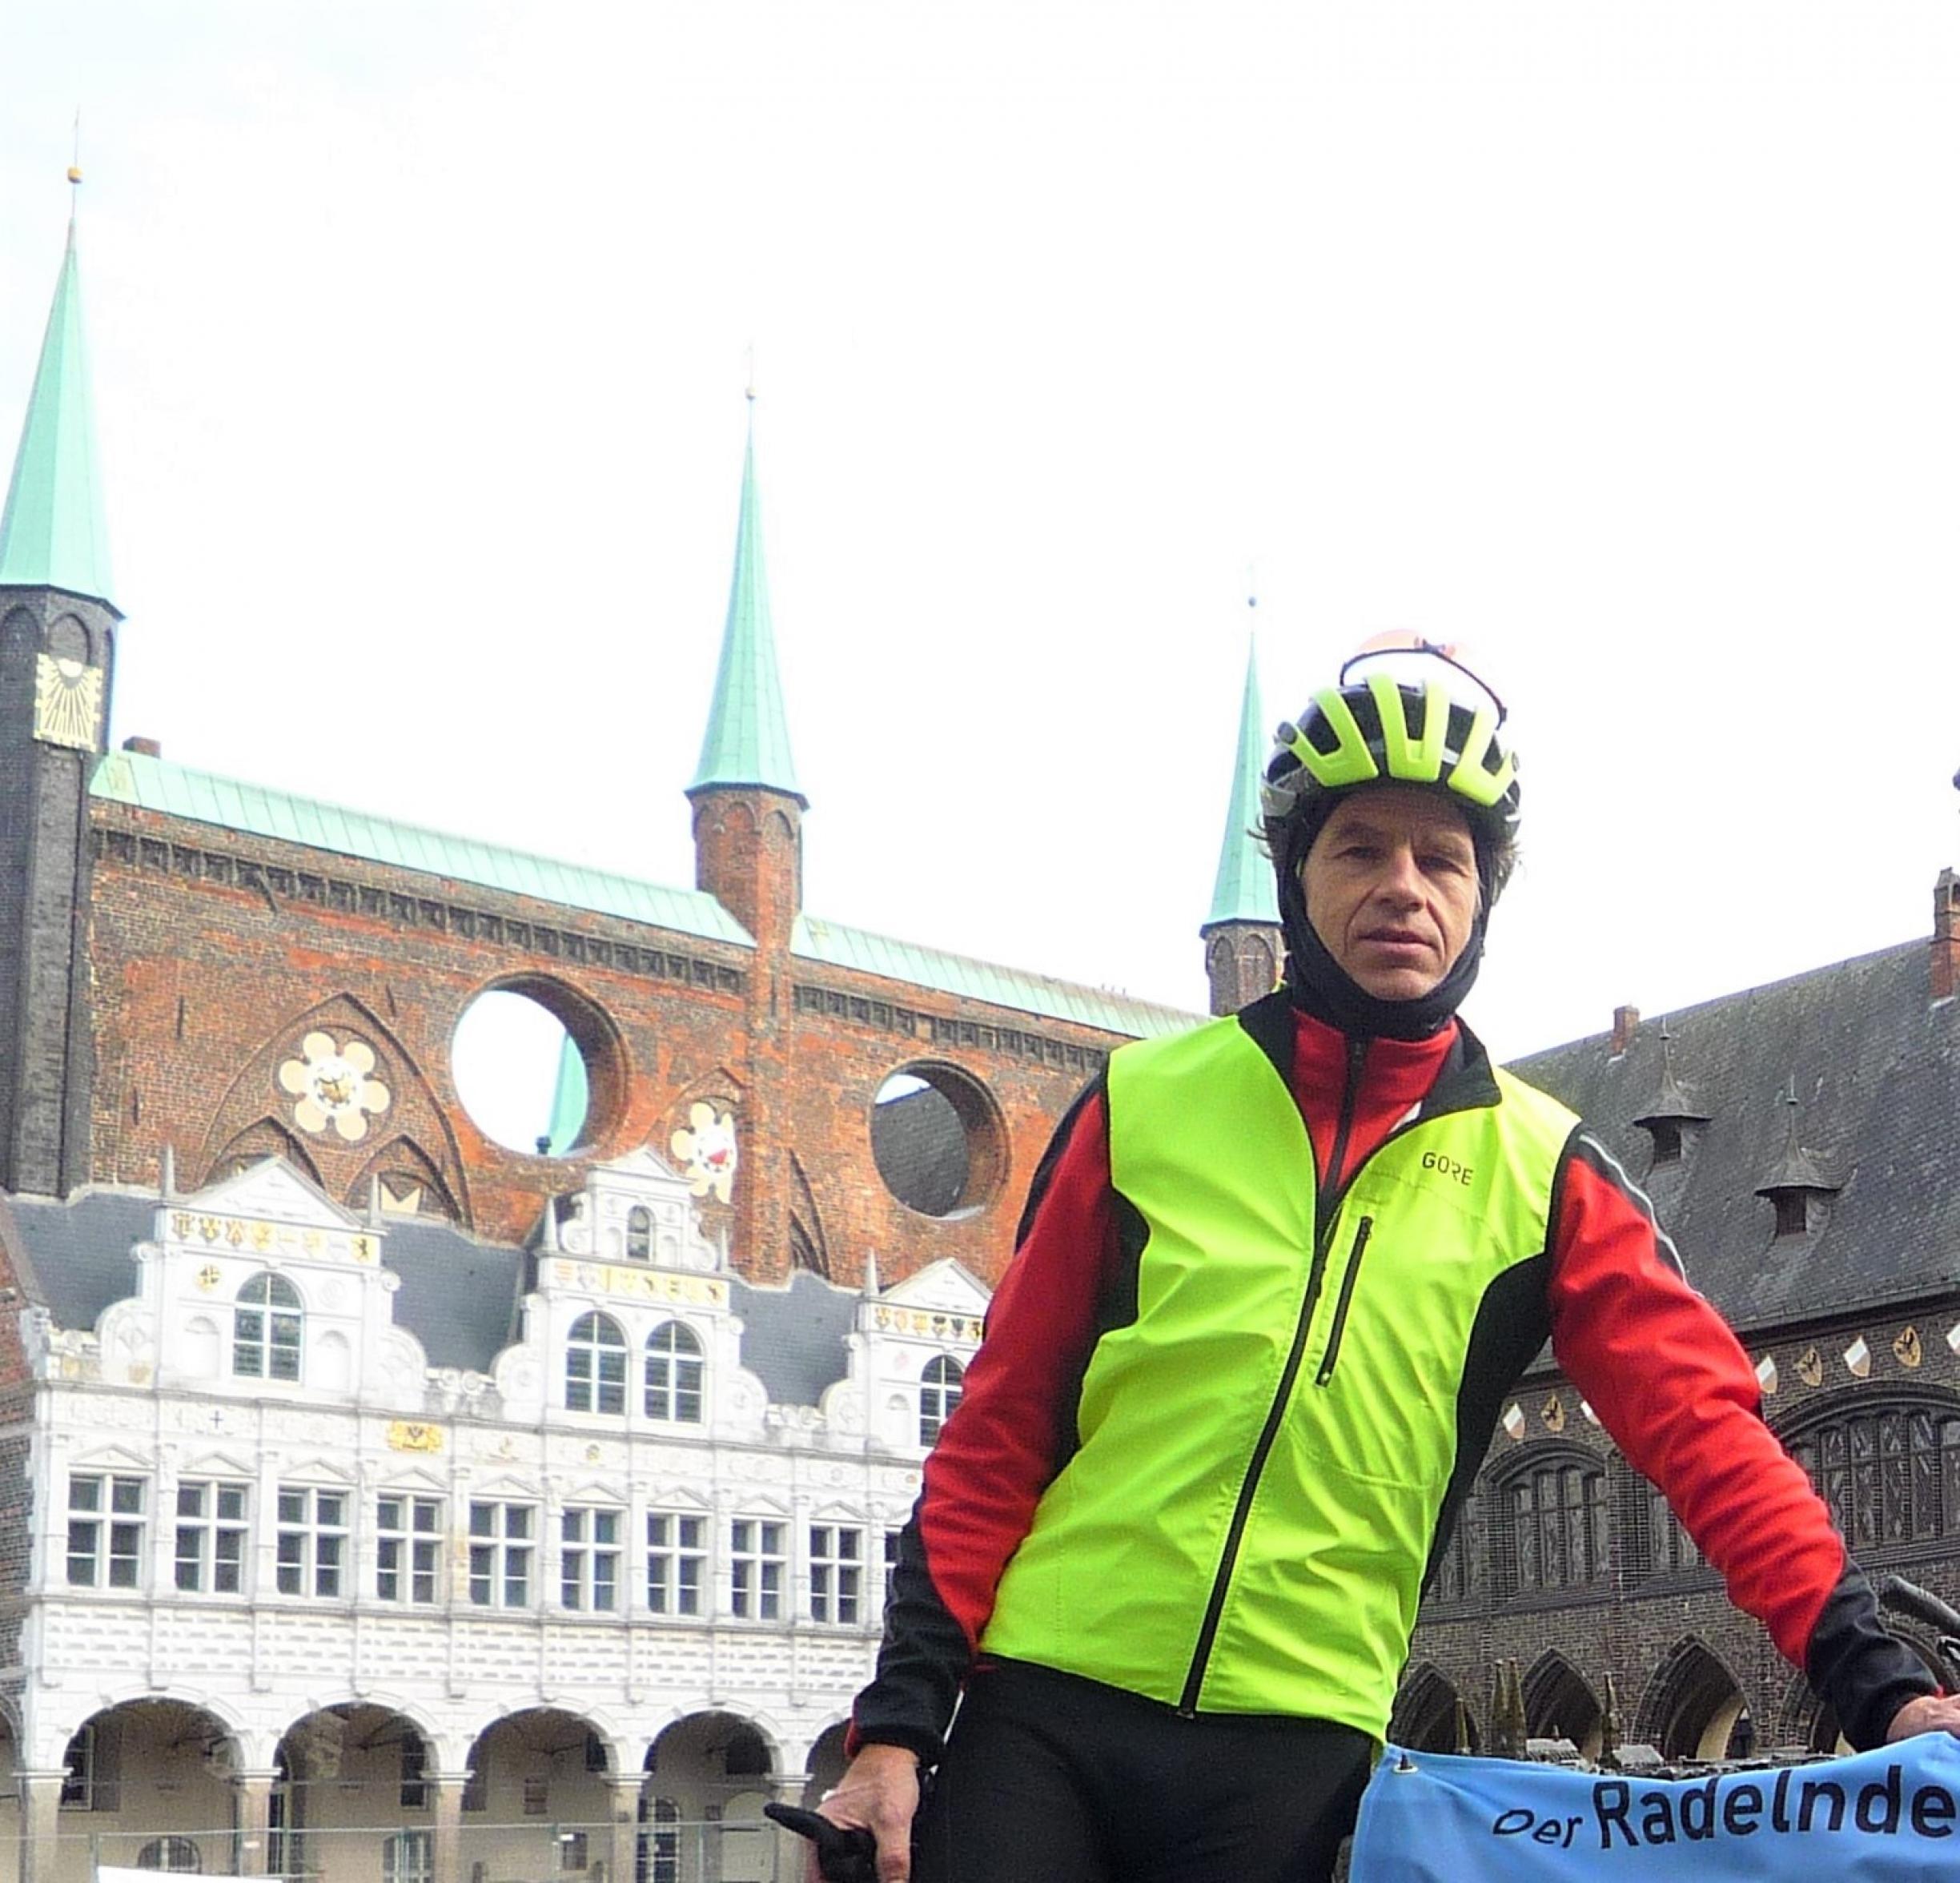 Der RadelndeReporter in Fahrradkluft vor Teilen der Rathauspassage im Hintergrund.